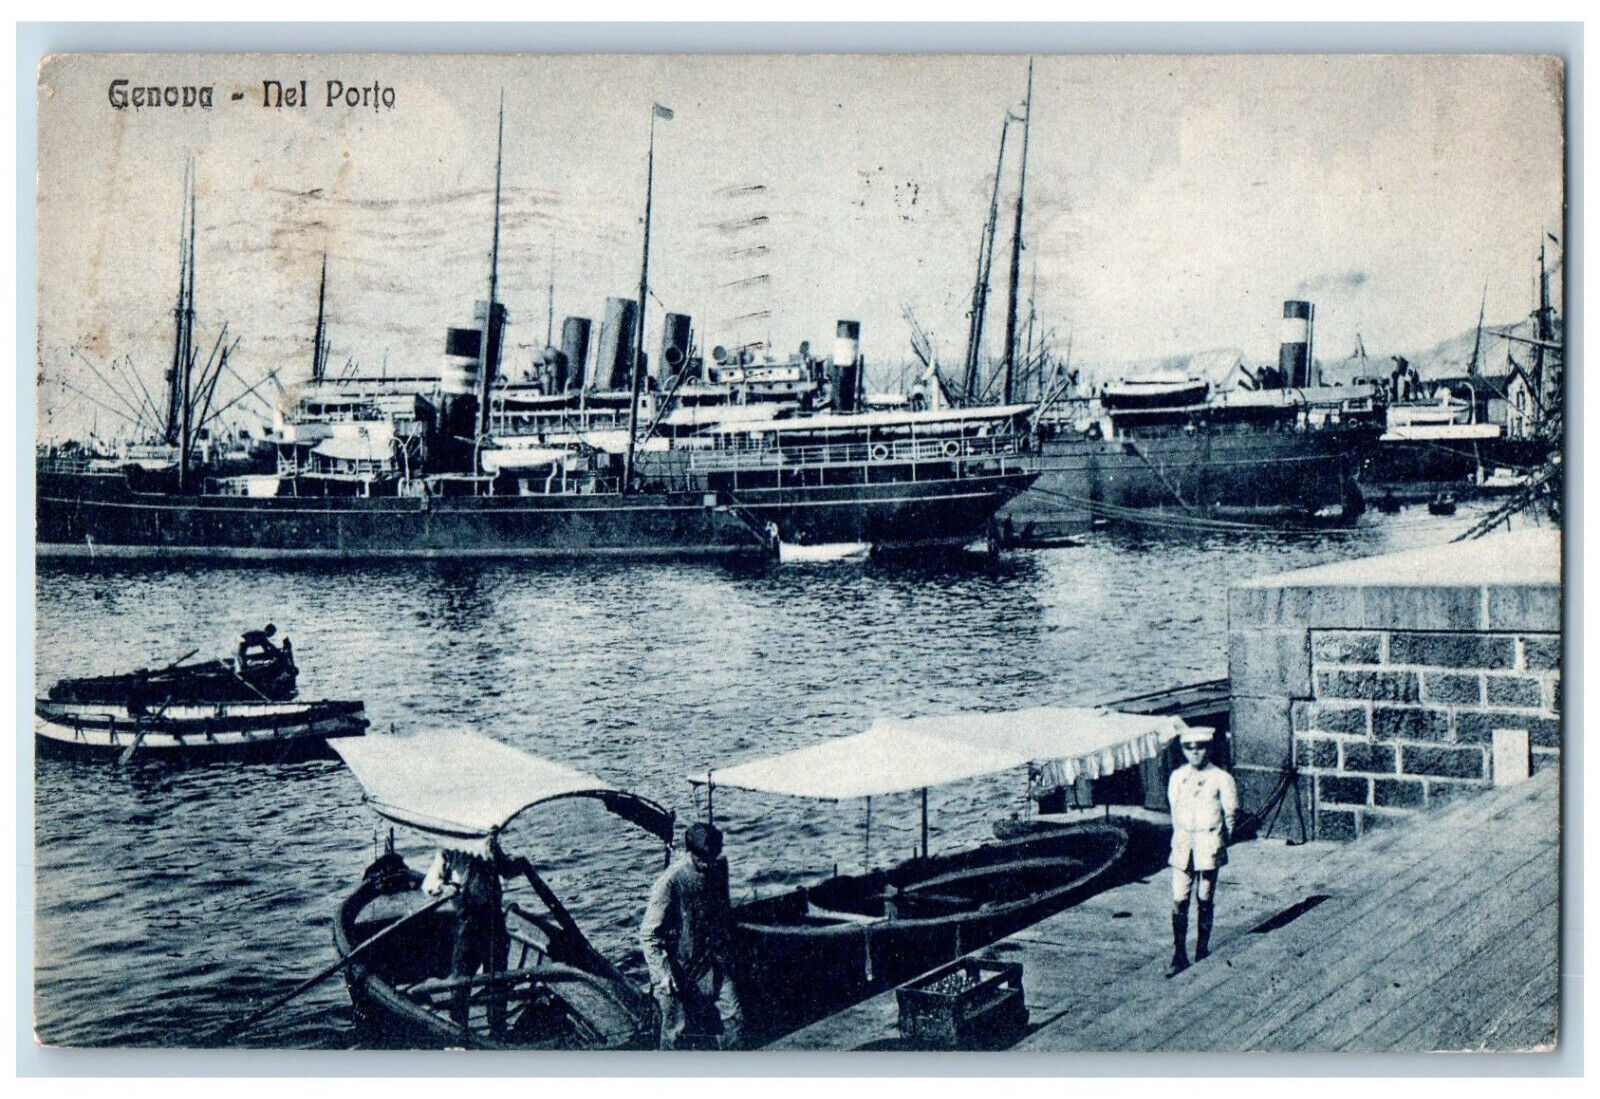 Genova (Genoa) Italy Postcard Boat Ship View In The port 1925 Vintage